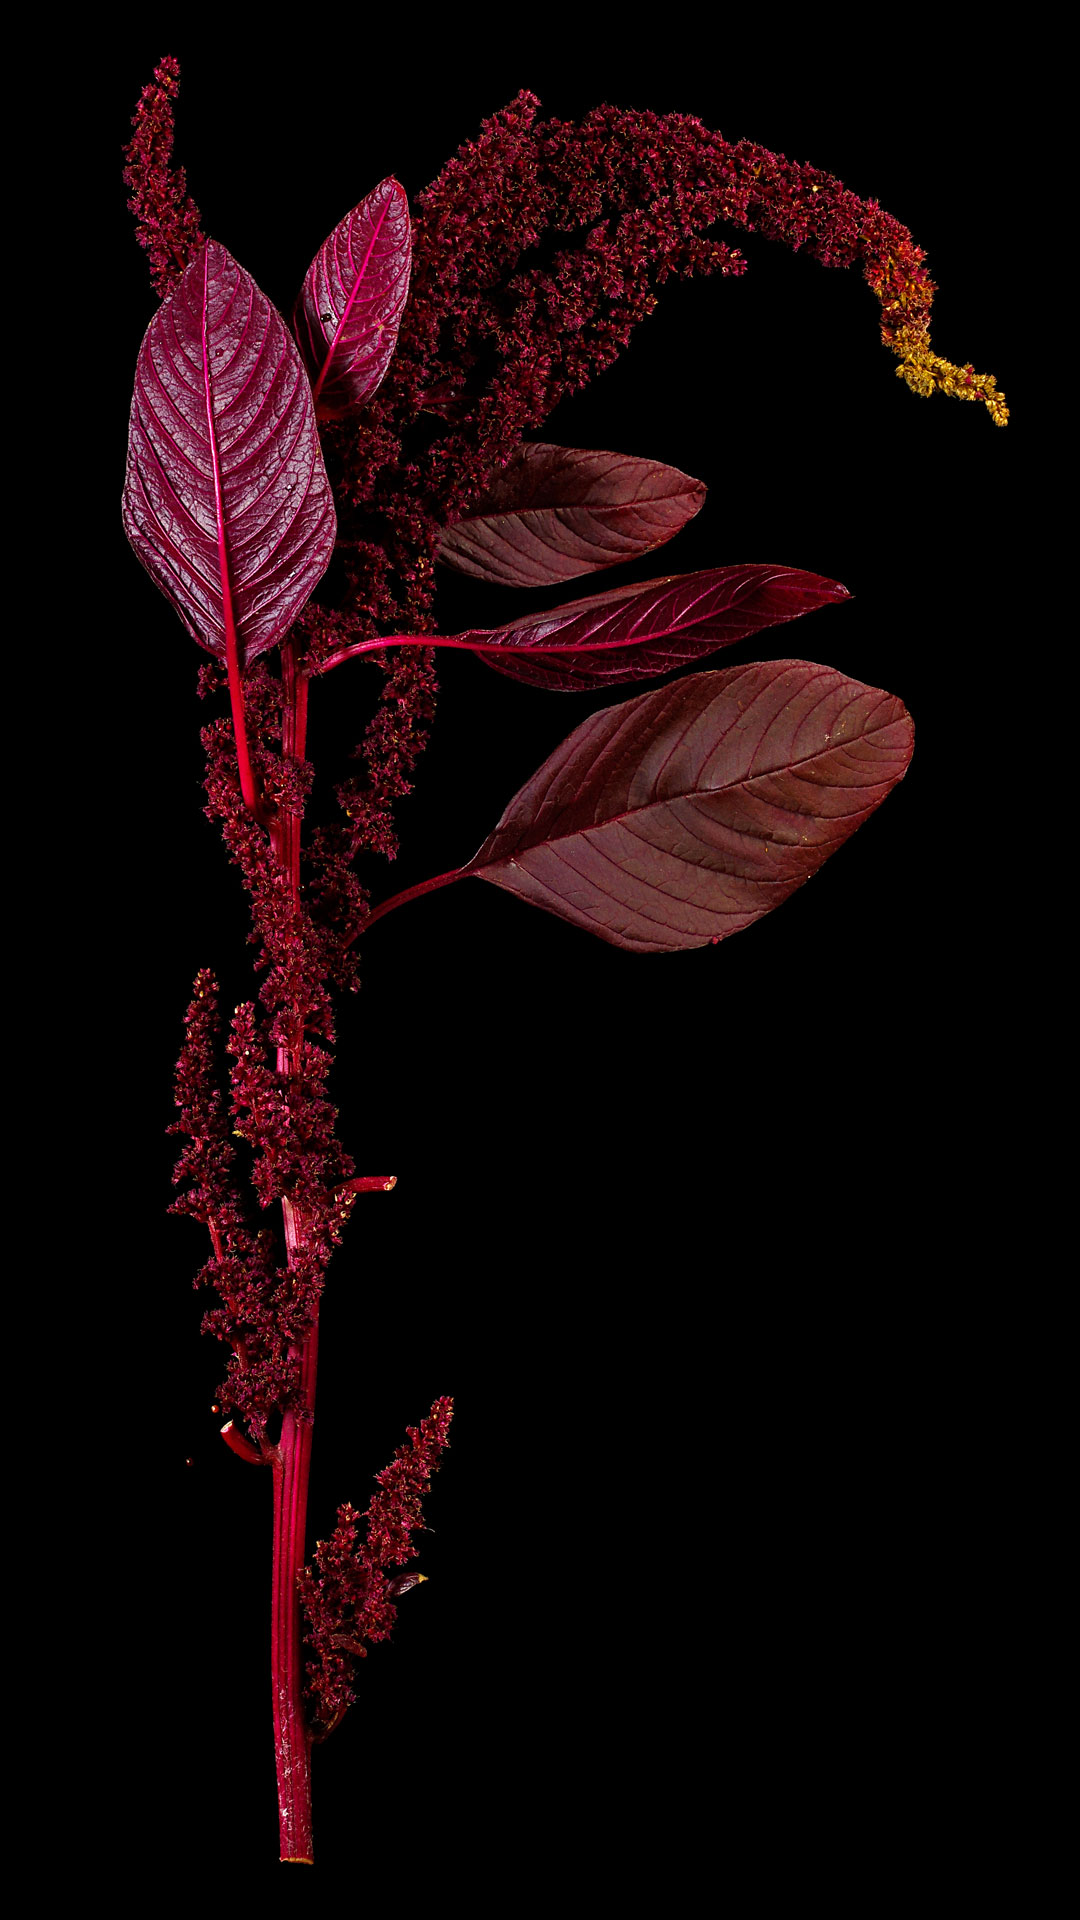 Amaranthus cruentus x powellii ‚Hopi red dye‘